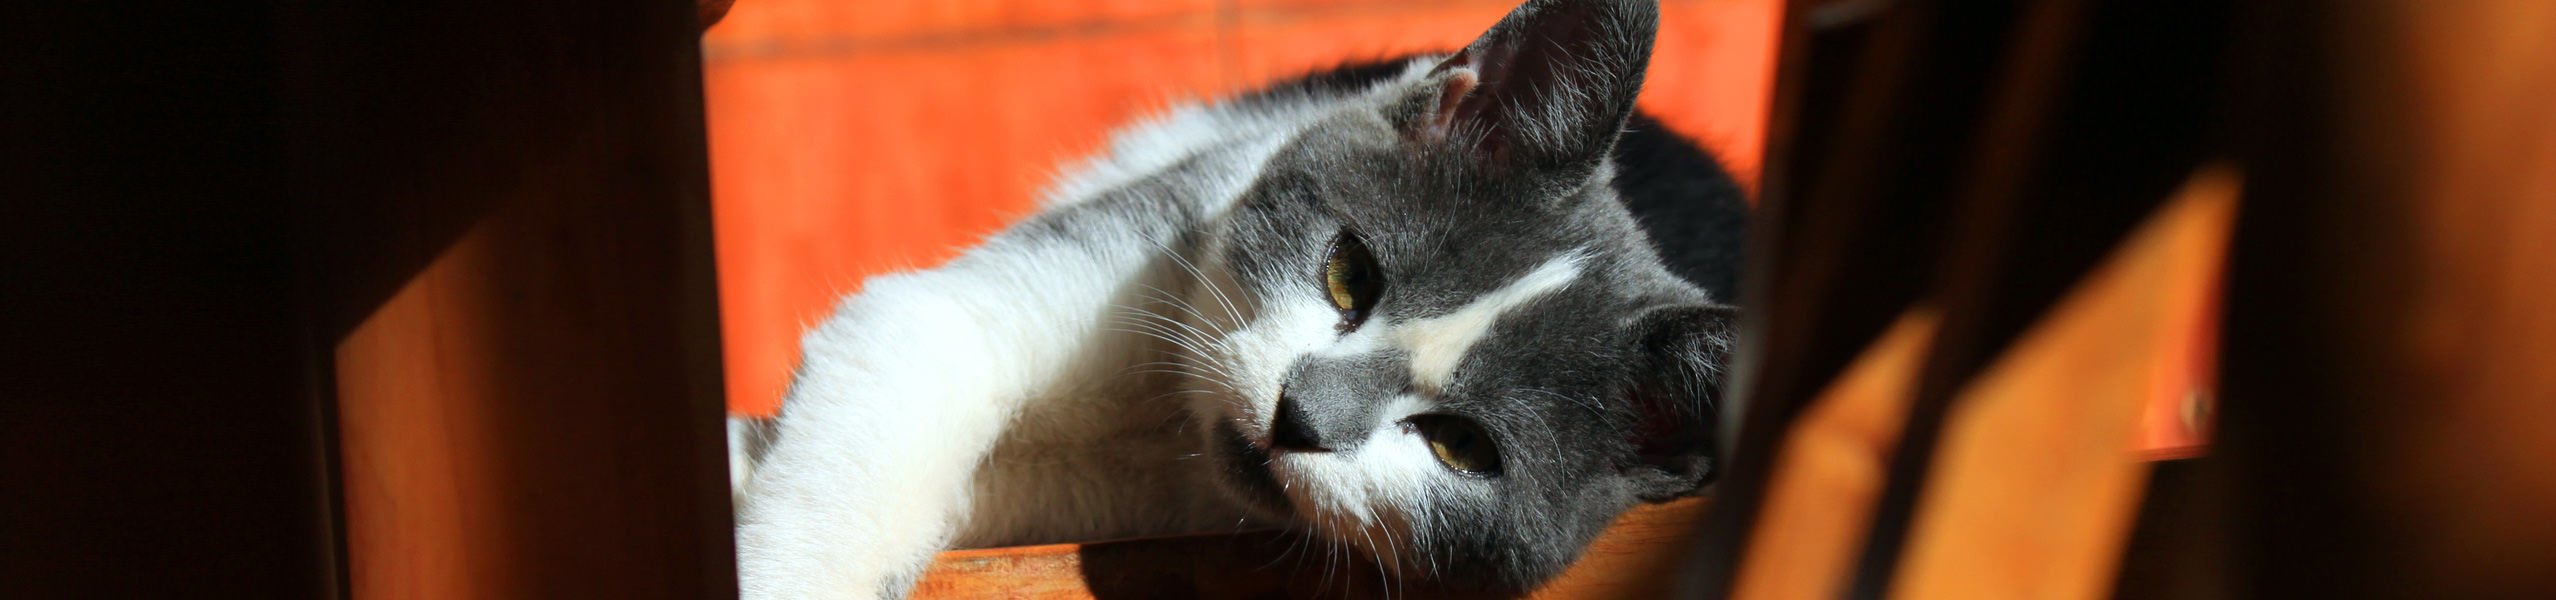 Katze mit Arthrose oder Arthritis: unbedingt richtig behandeln